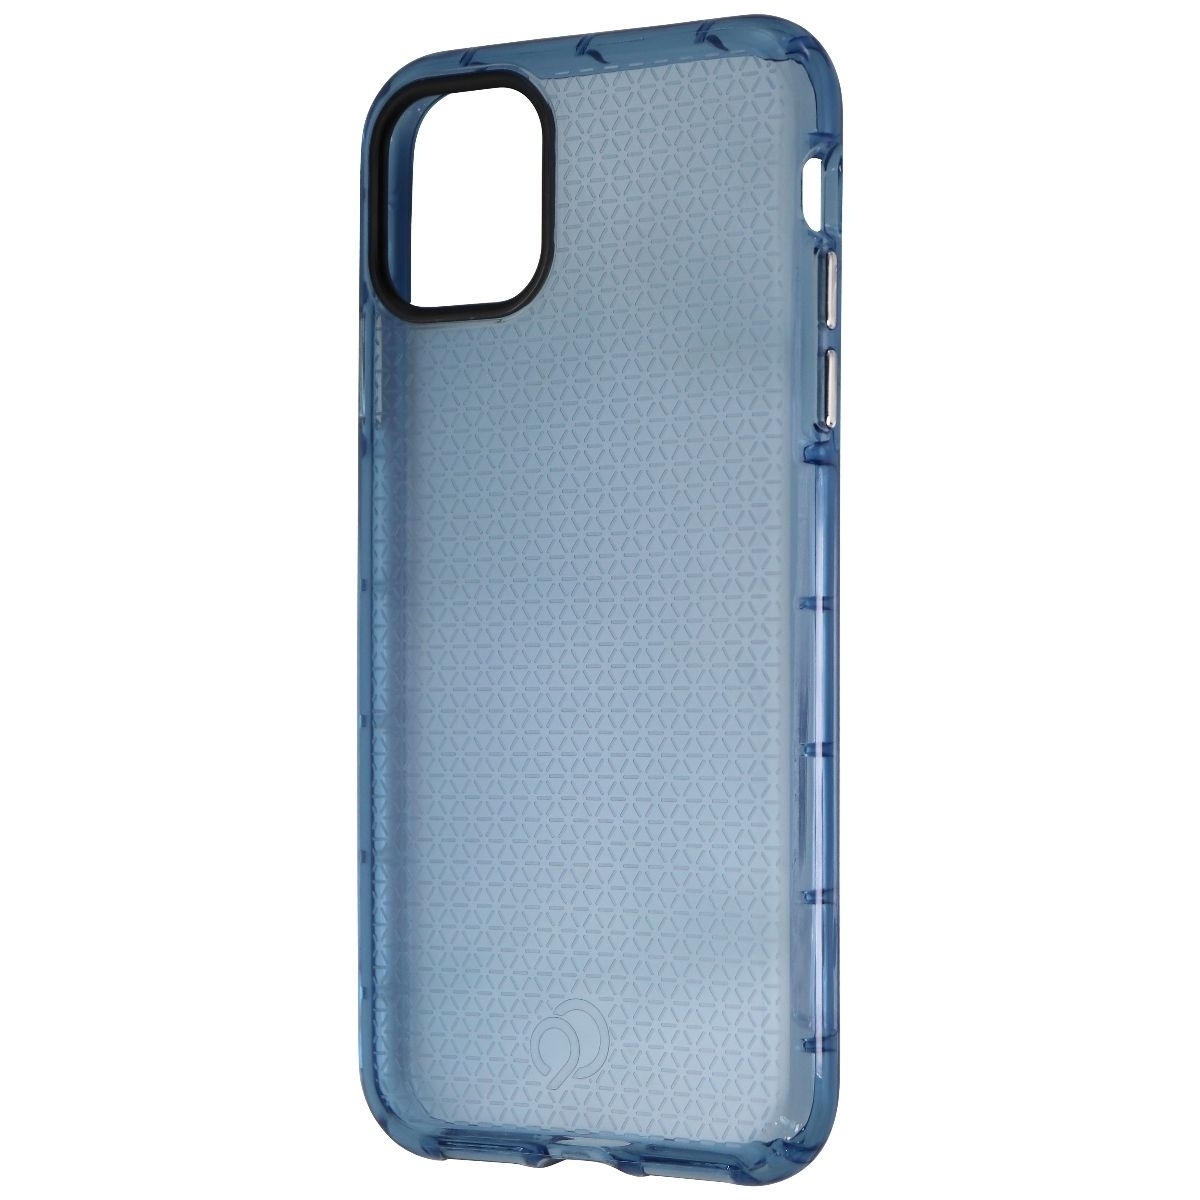 Nimbus9 Phantom 2 Series Case For Apple IPhone 11 Pro Max - Pacific Blue